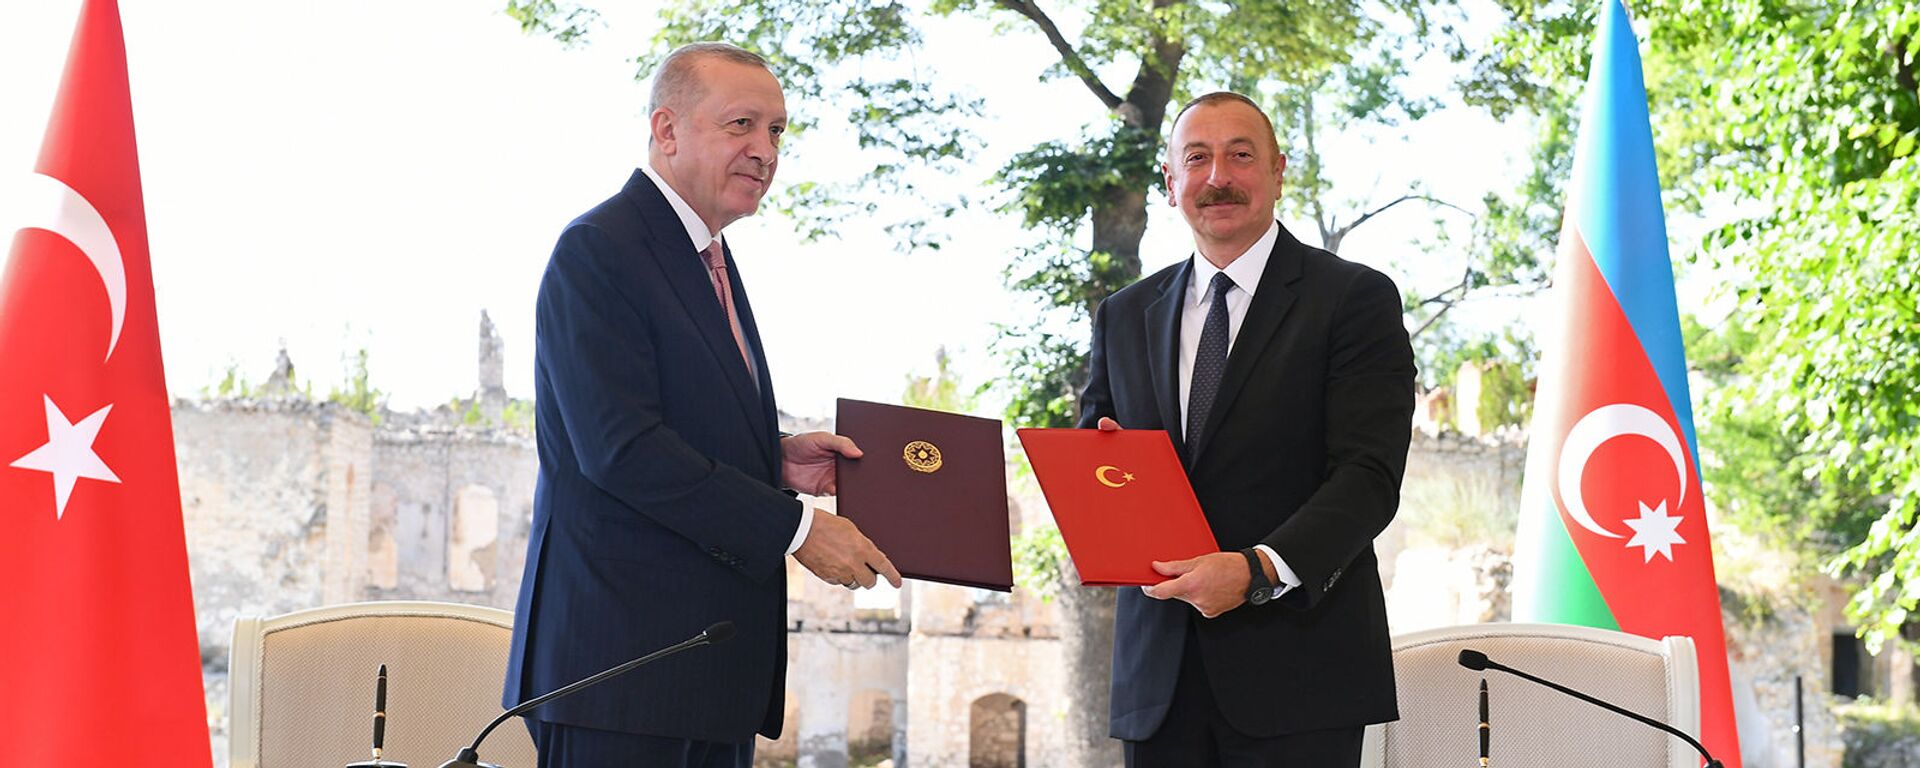 Президенты Турции и Азербайджана Реджеп Тайип Эрдоган и Ильхам Алиев подписывают декларацию о союзнических соглашениях (15 июня 2021). Шуши - Sputnik Արմենիա, 1920, 15.06.2021